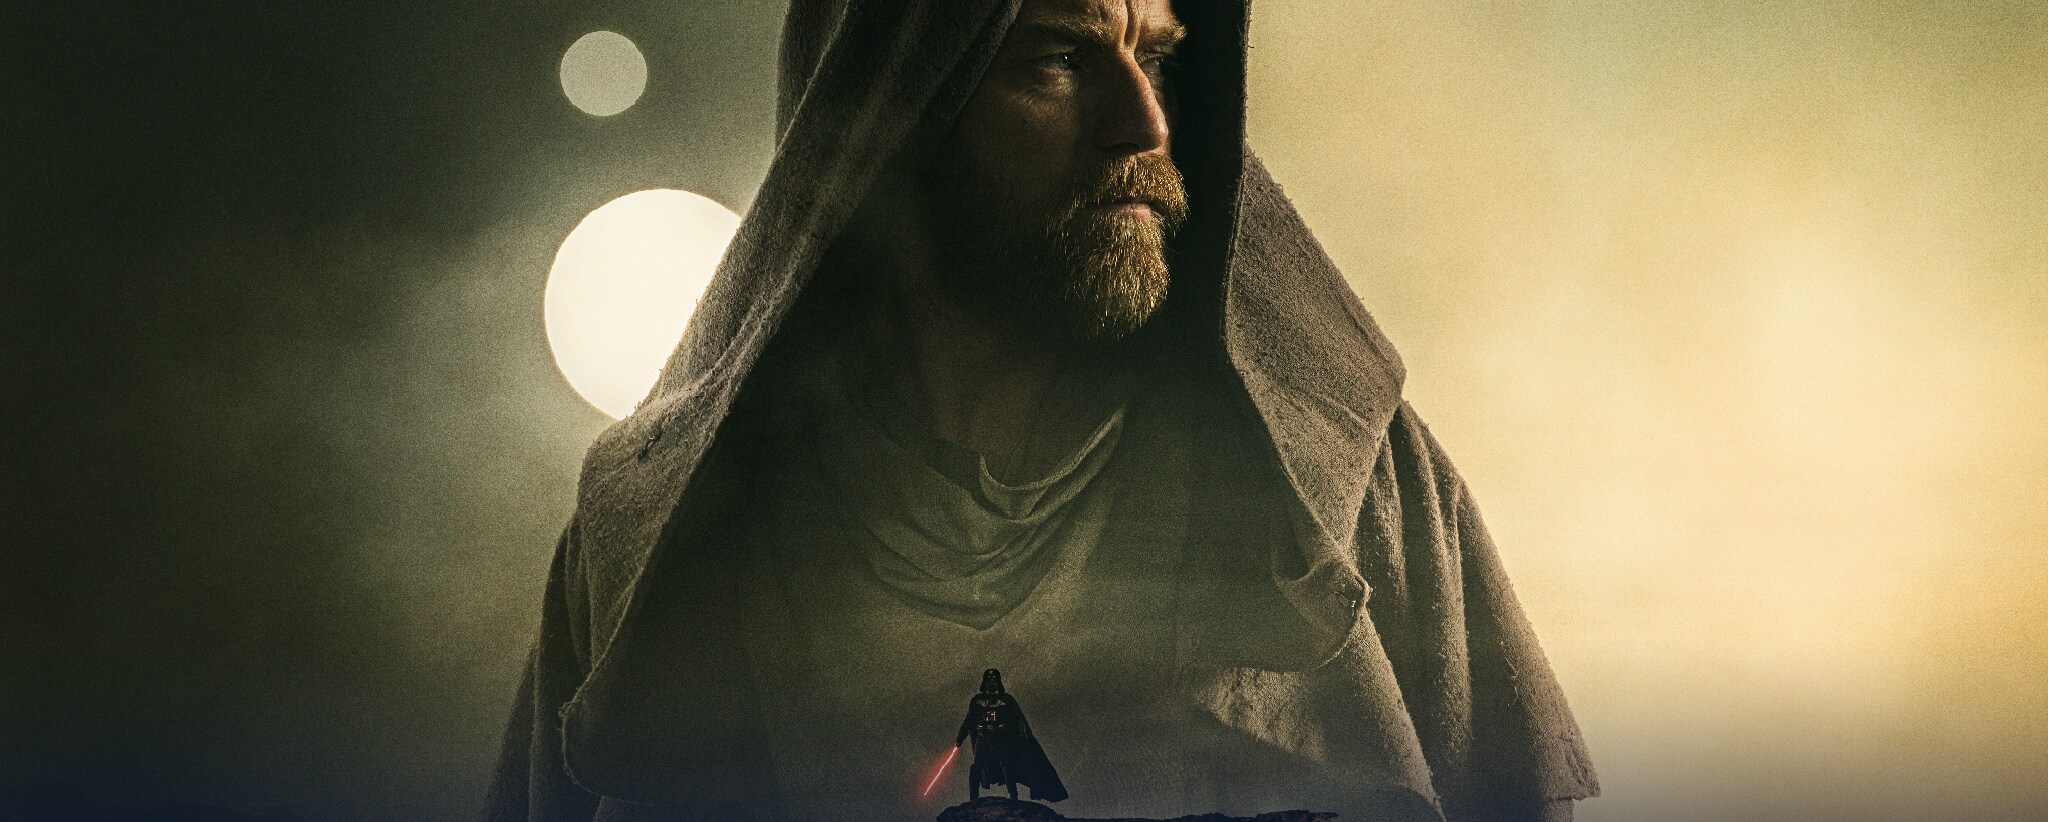 final de Obi-Wan Kenobi